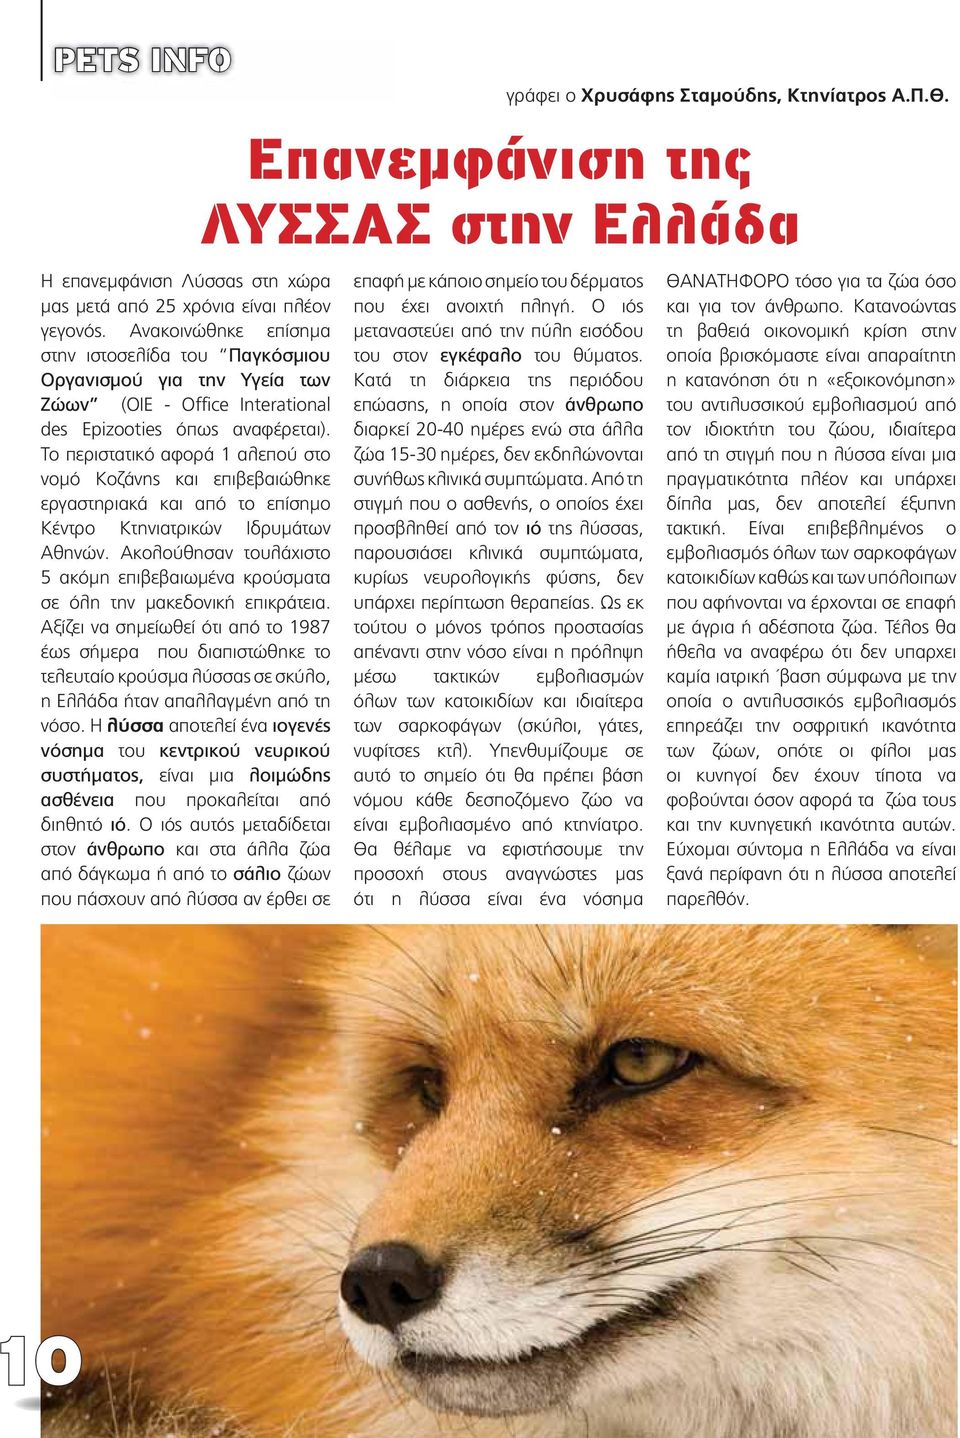 Το περιστατικό αφορά 1 αλεπού στο νομό Κοζάνης και επιβεβαιώθηκε εργαστηριακά και από το επίσημο Κέντρο Κτηνιατρικών Ιδρυμάτων Αθηνών.